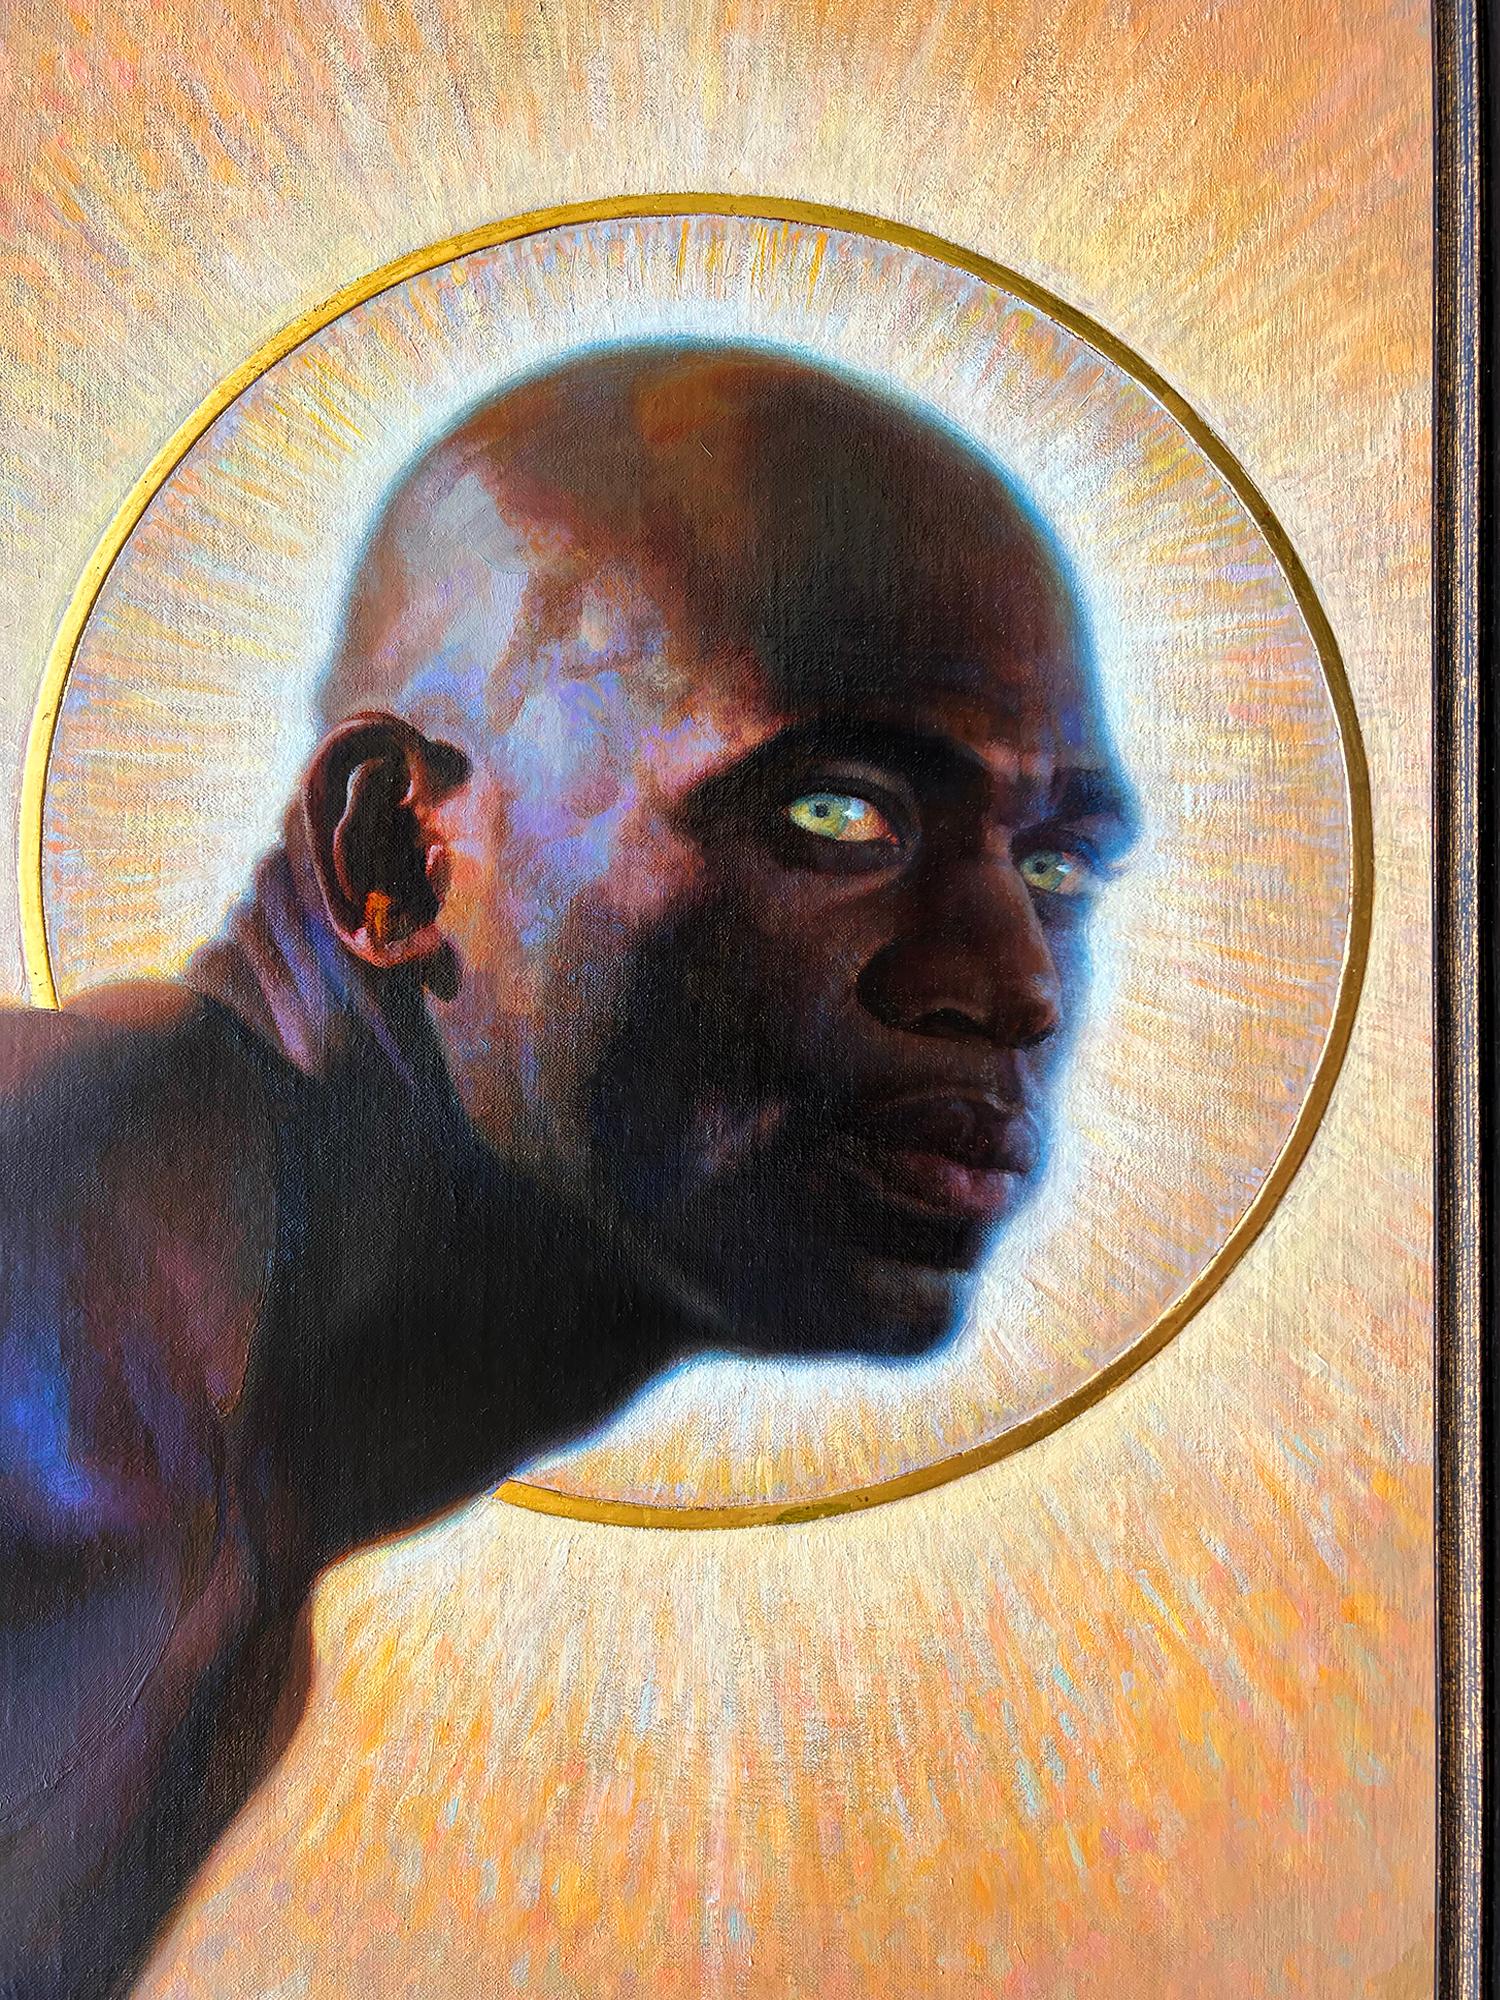 Black Angel - African American Artist - Painting by Thomas Blackshear